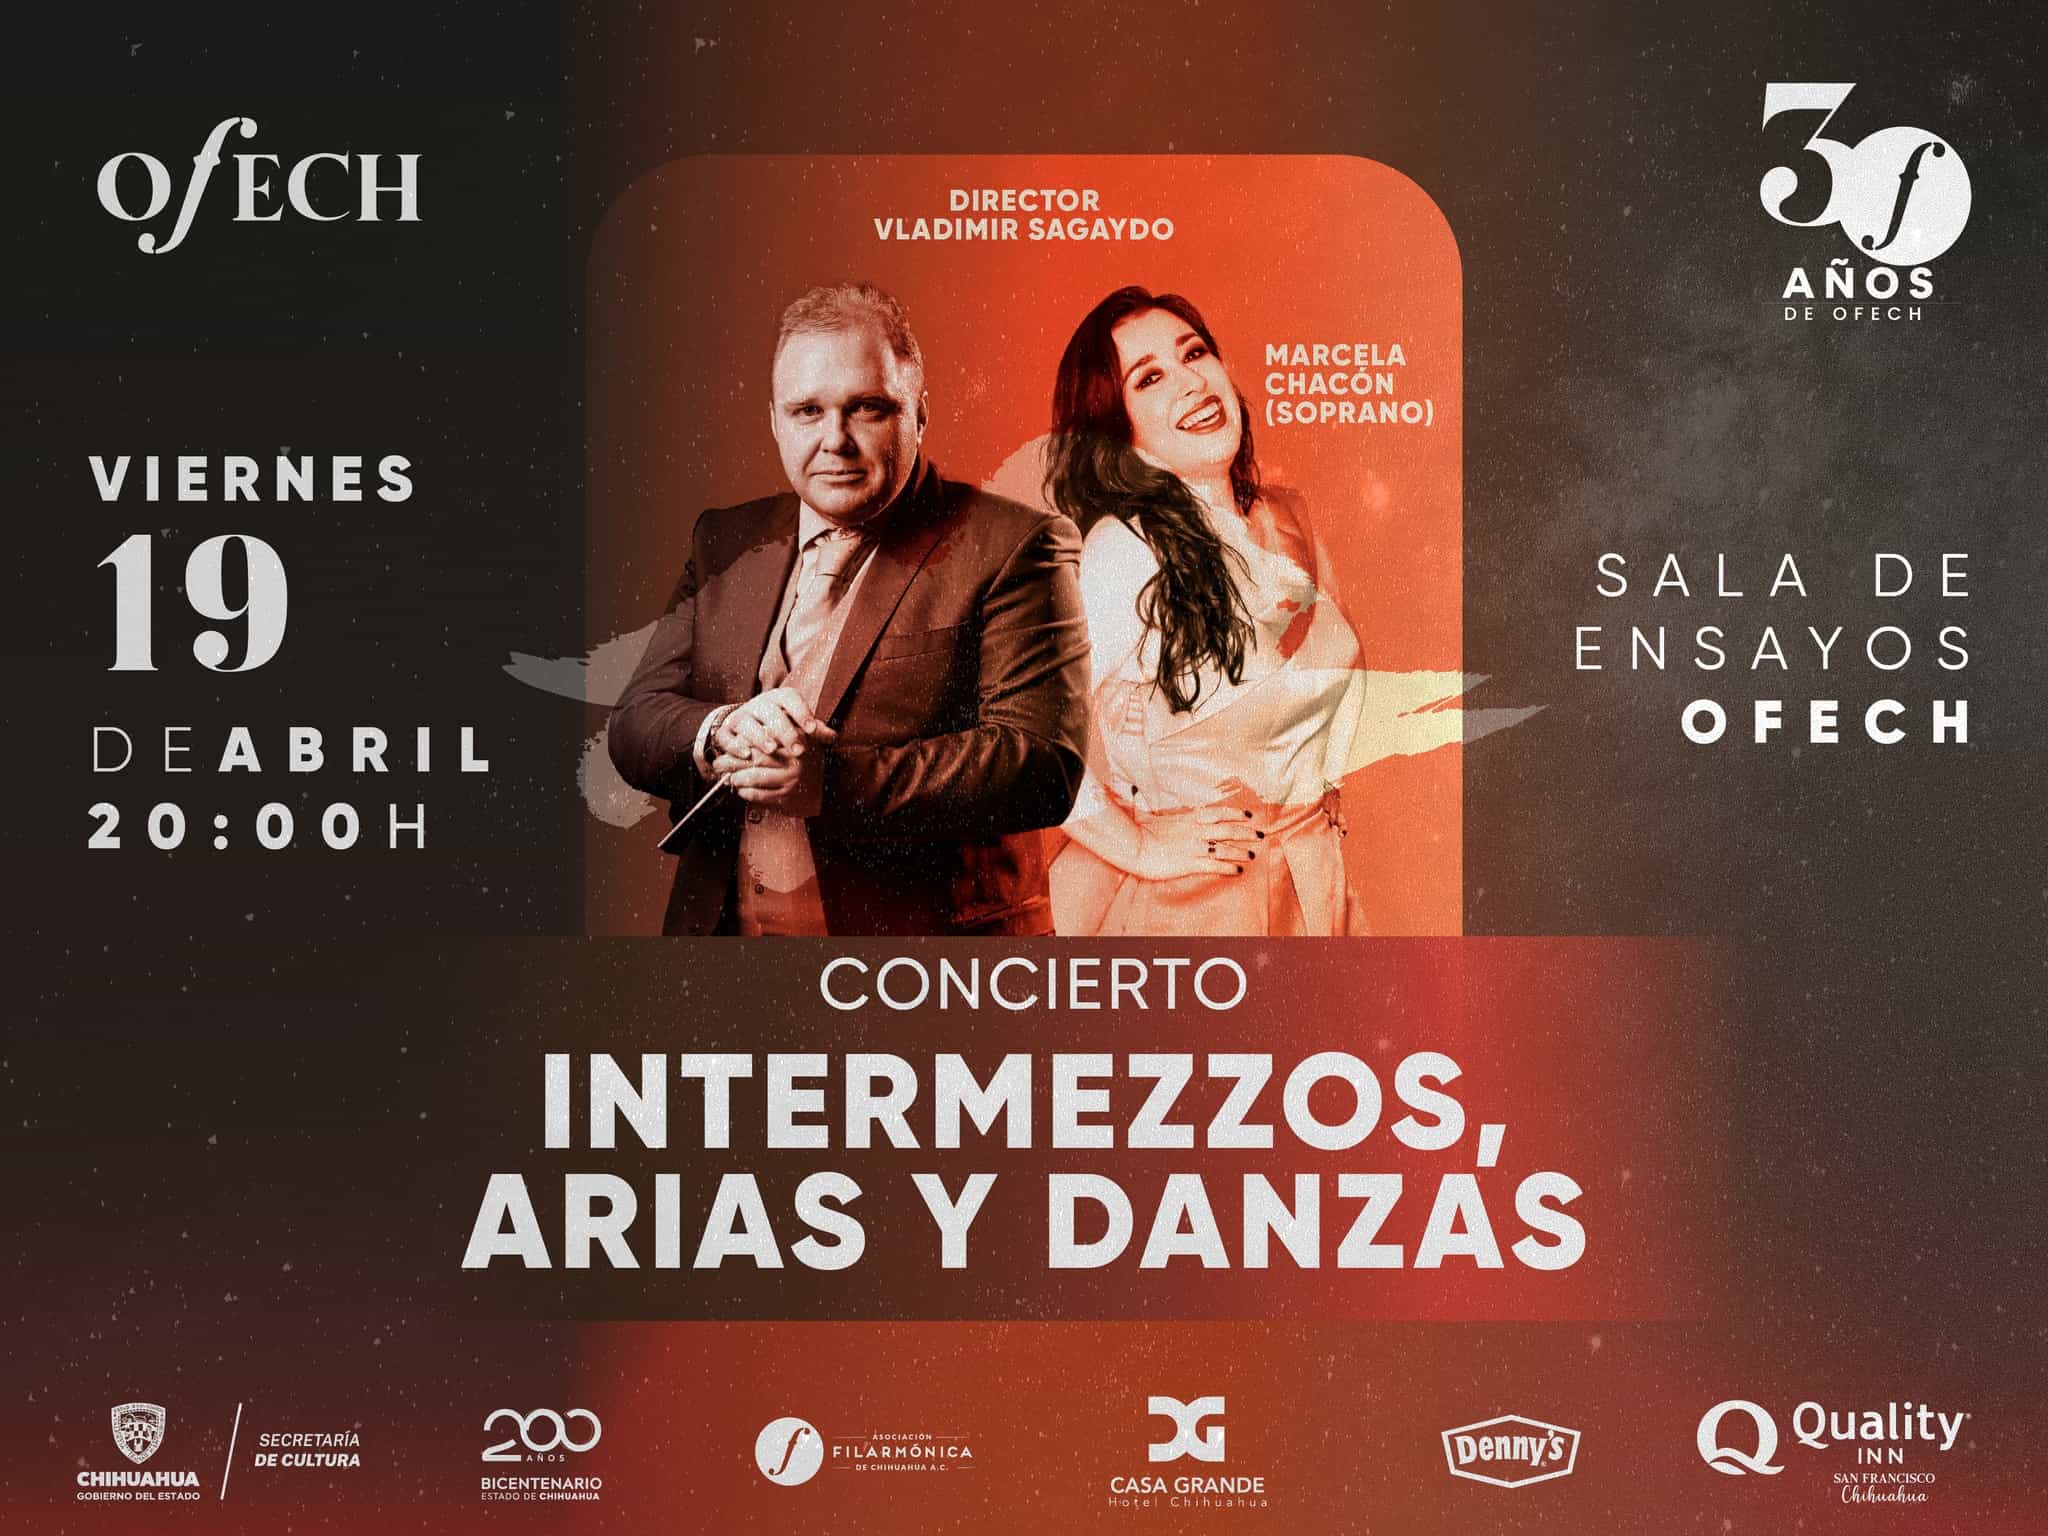 Anuncia OFECh el concierto “Intermezzos, Arias y Danzas” bajo la batuta del director ruso Vladimir Sagaydo